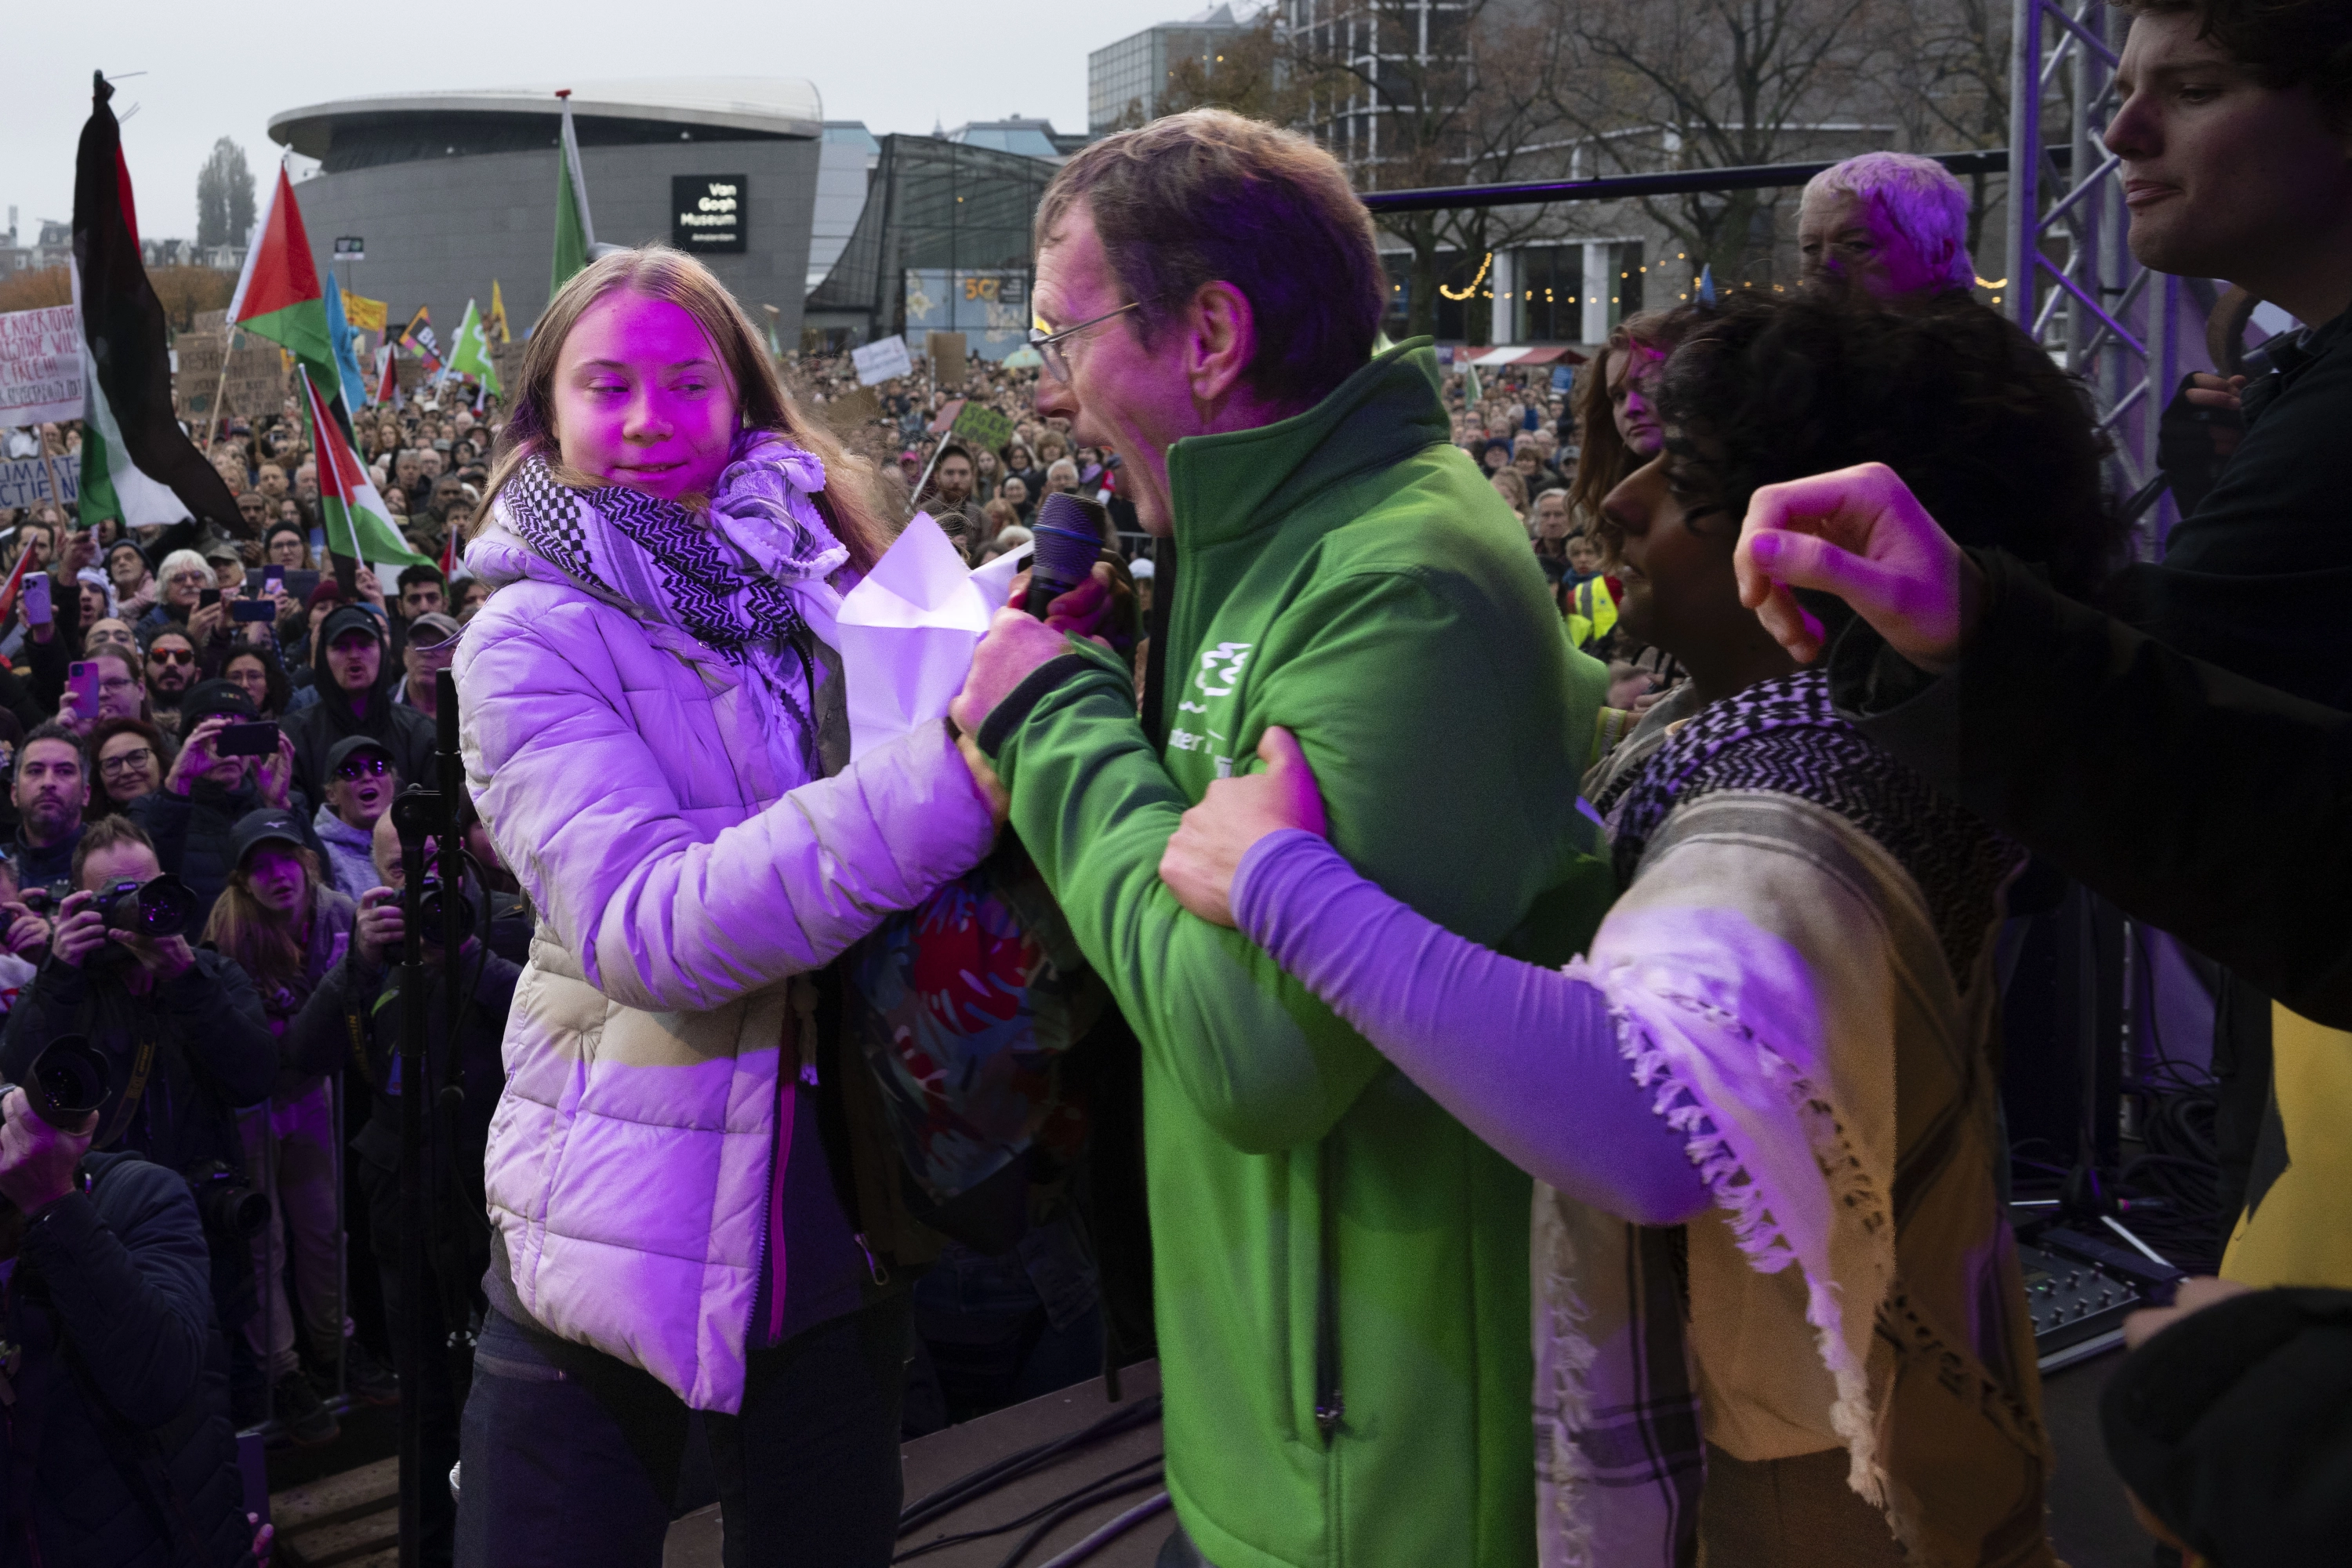 Detienen a Greta Thunberg en una protesta en La Haya: “Vivimos en estado de emergencia planetaria” : Internacional de